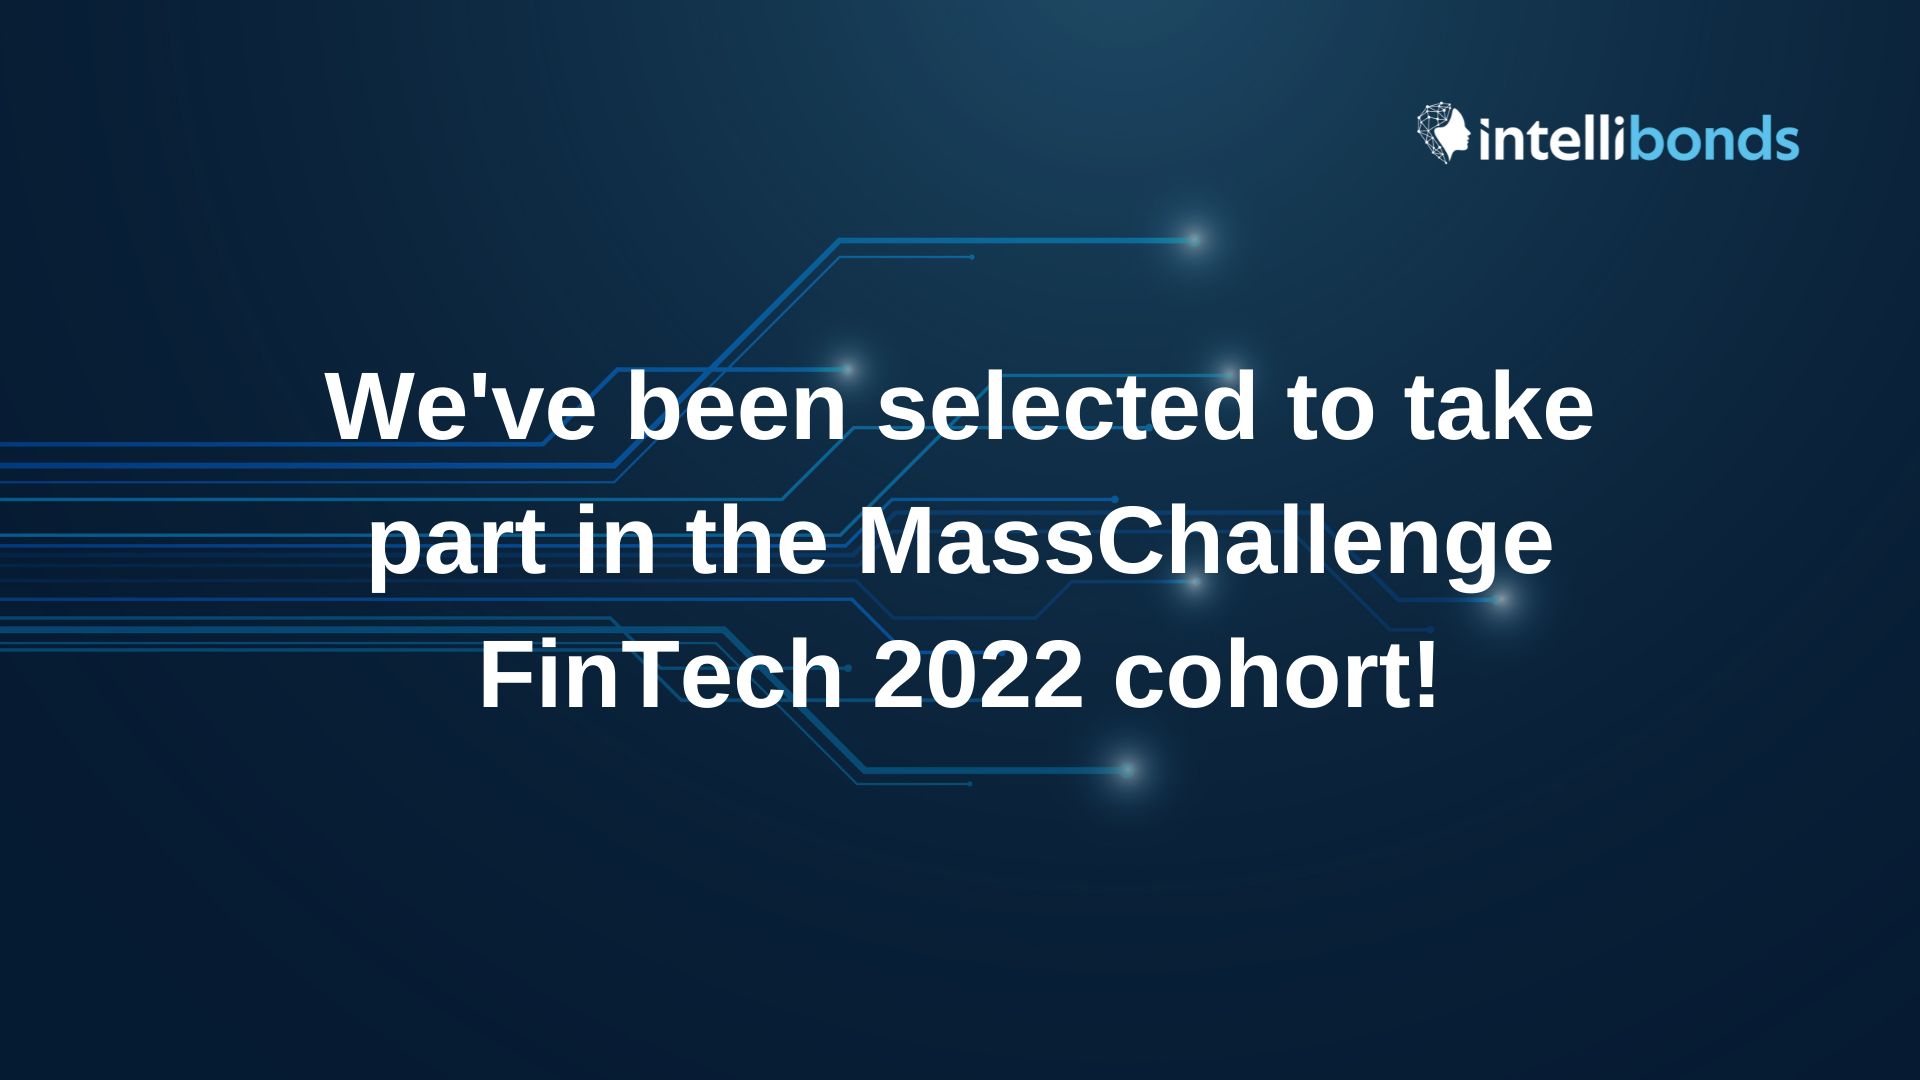 Intellibonds has been selected to participate in the MassChallenge FinTech 2022 cohort